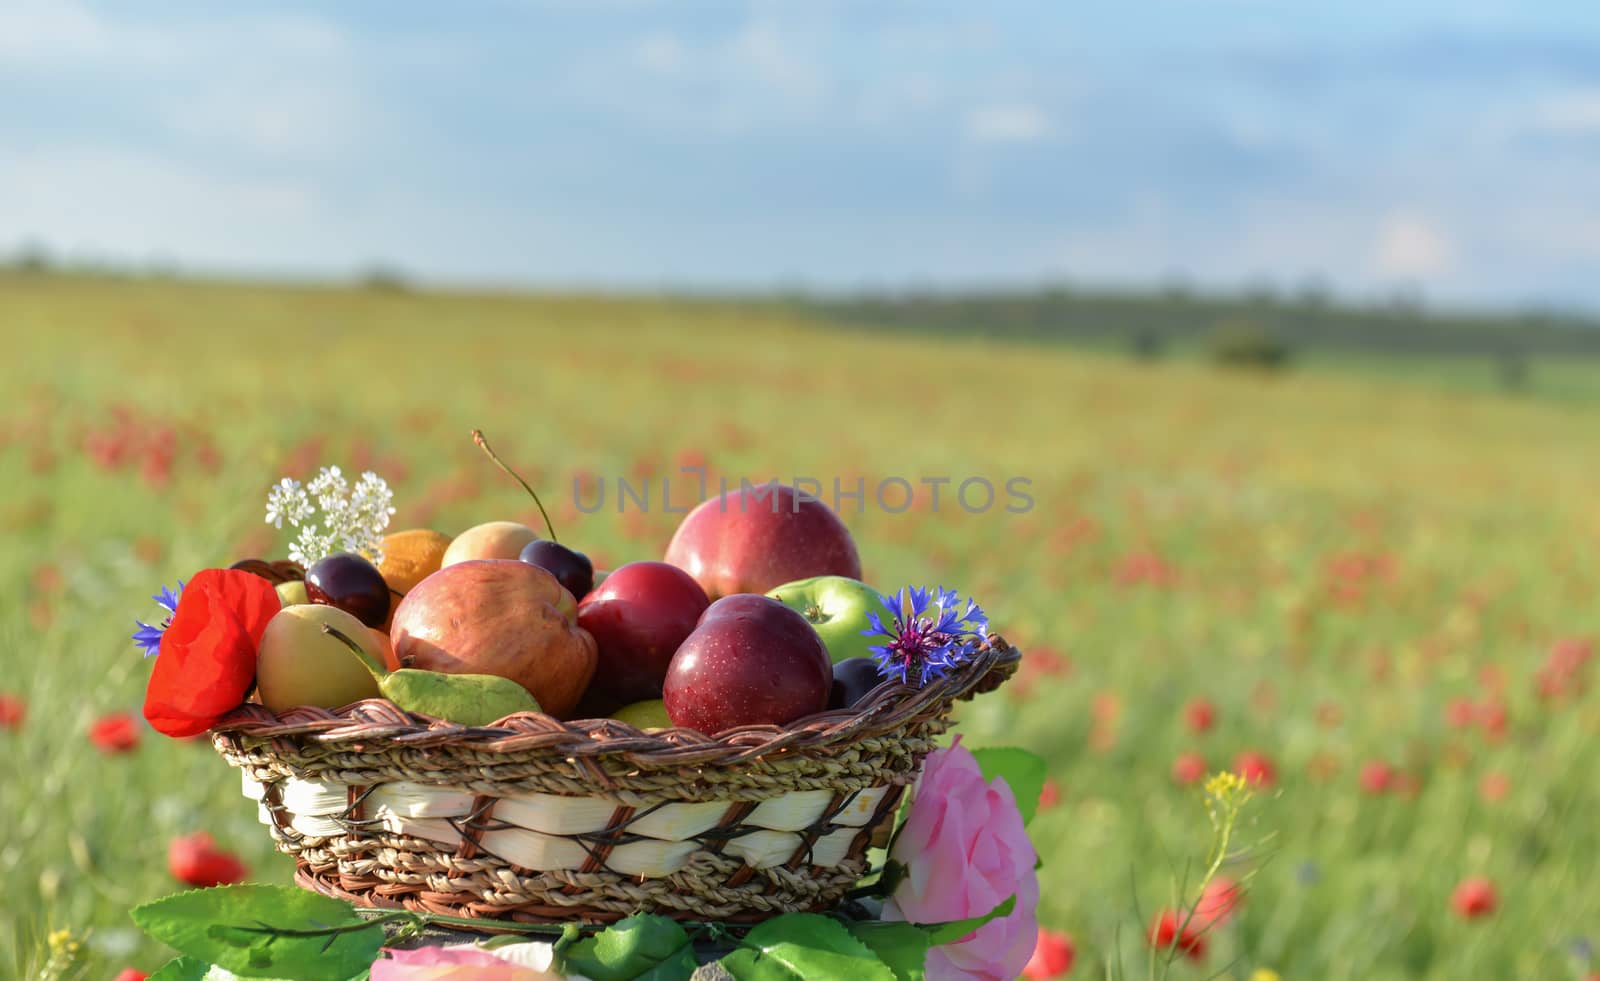 fruit basket in a poppy field by crazymedia007